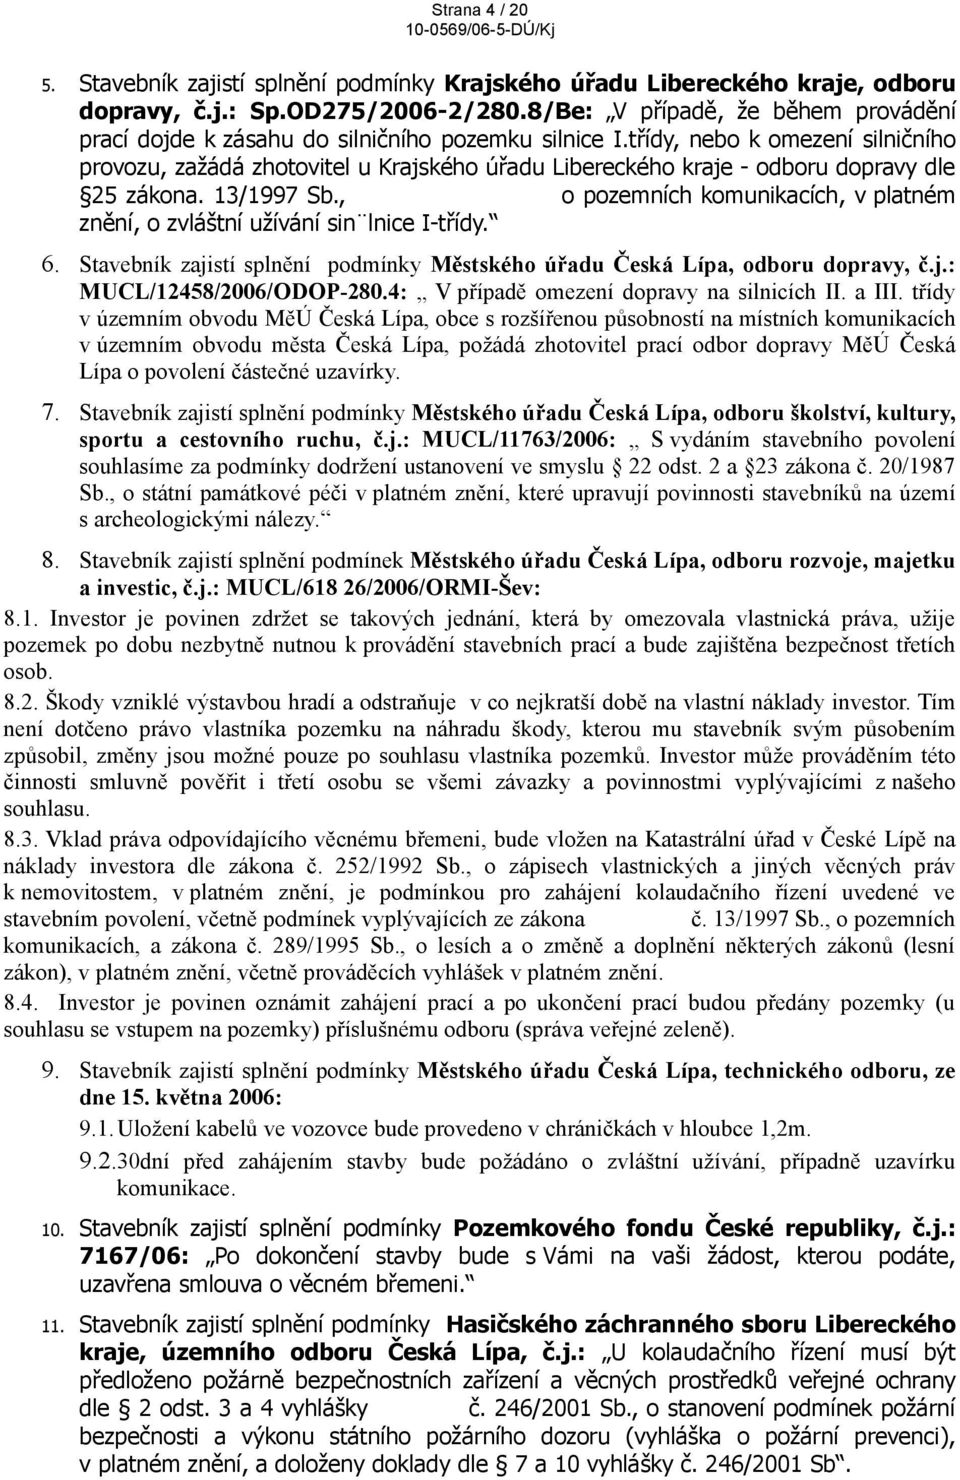 třídy, nebo k omezení silničního provozu, zažádá zhotovitel u Krajského úřadu Libereckého kraje - odboru dopravy dle 25 zákona. 13/1997 Sb.